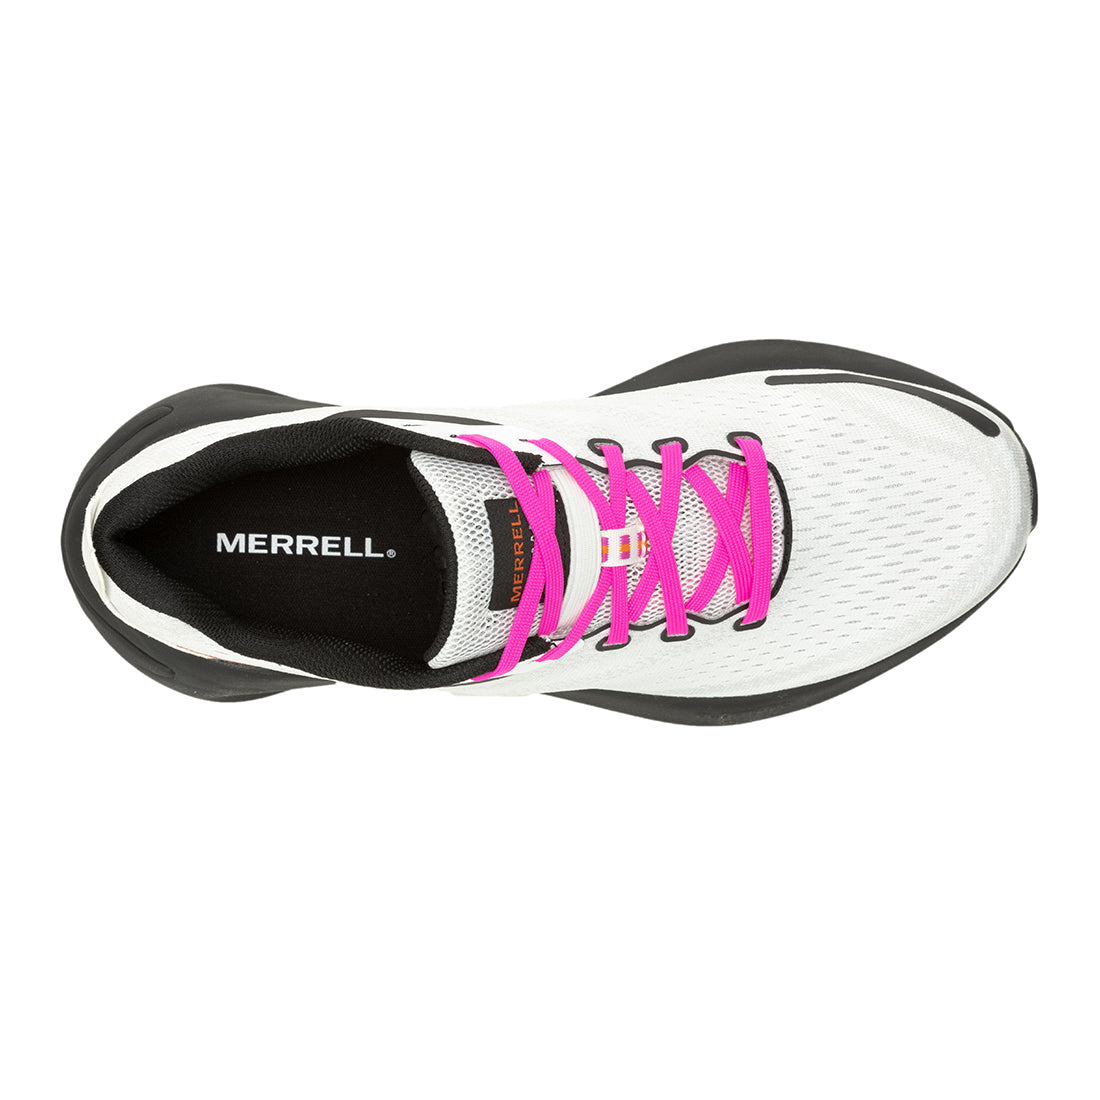 Morphlite - White/Multi Mens Trail Running Shoes